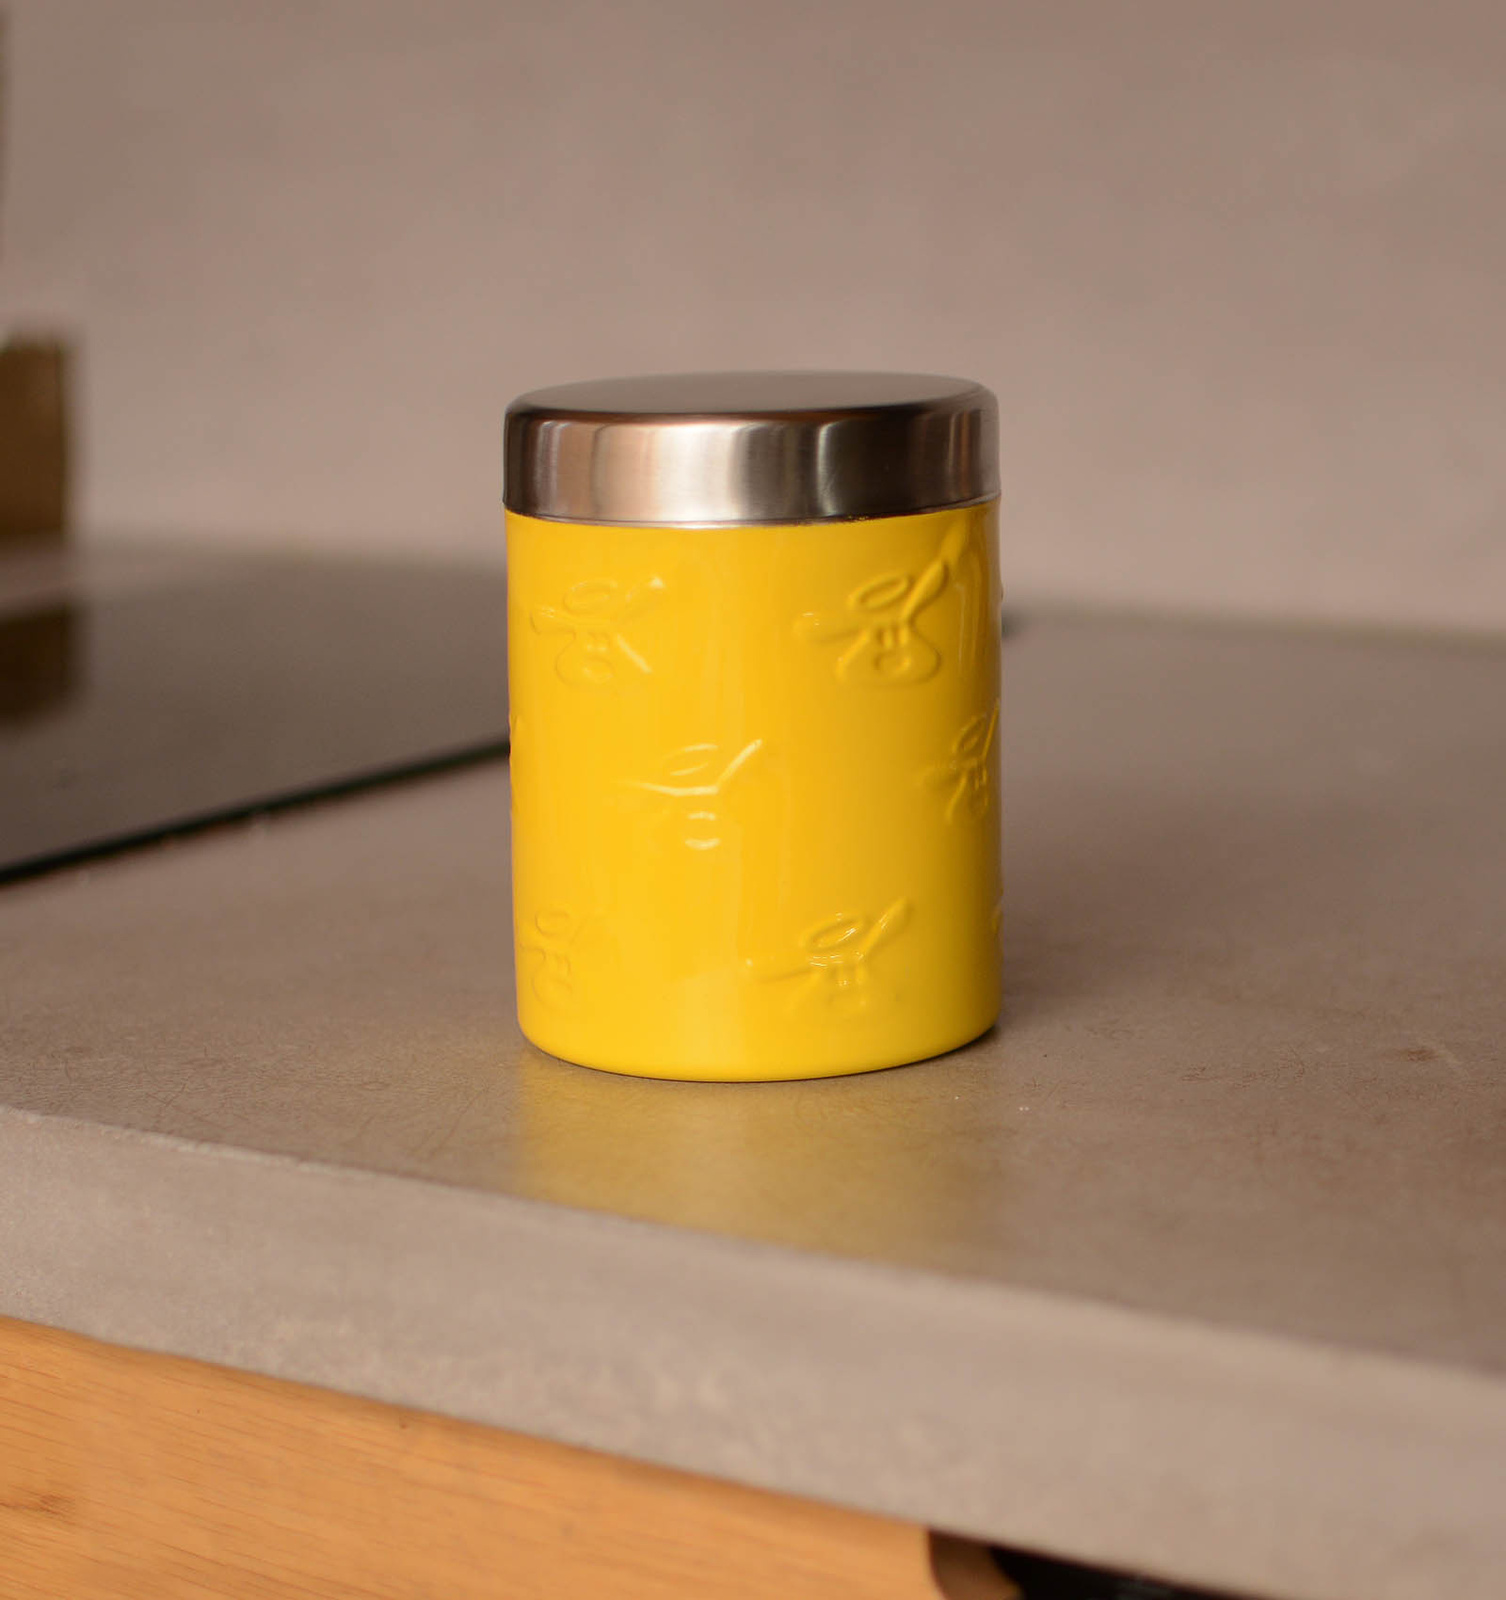 Tappi миски Tappi миски контейнер для хранения корма Бутт, желтый (730 мл) контейнер для запекания и хранения круглый с крышкой 400 мл желтый единый размер желтый